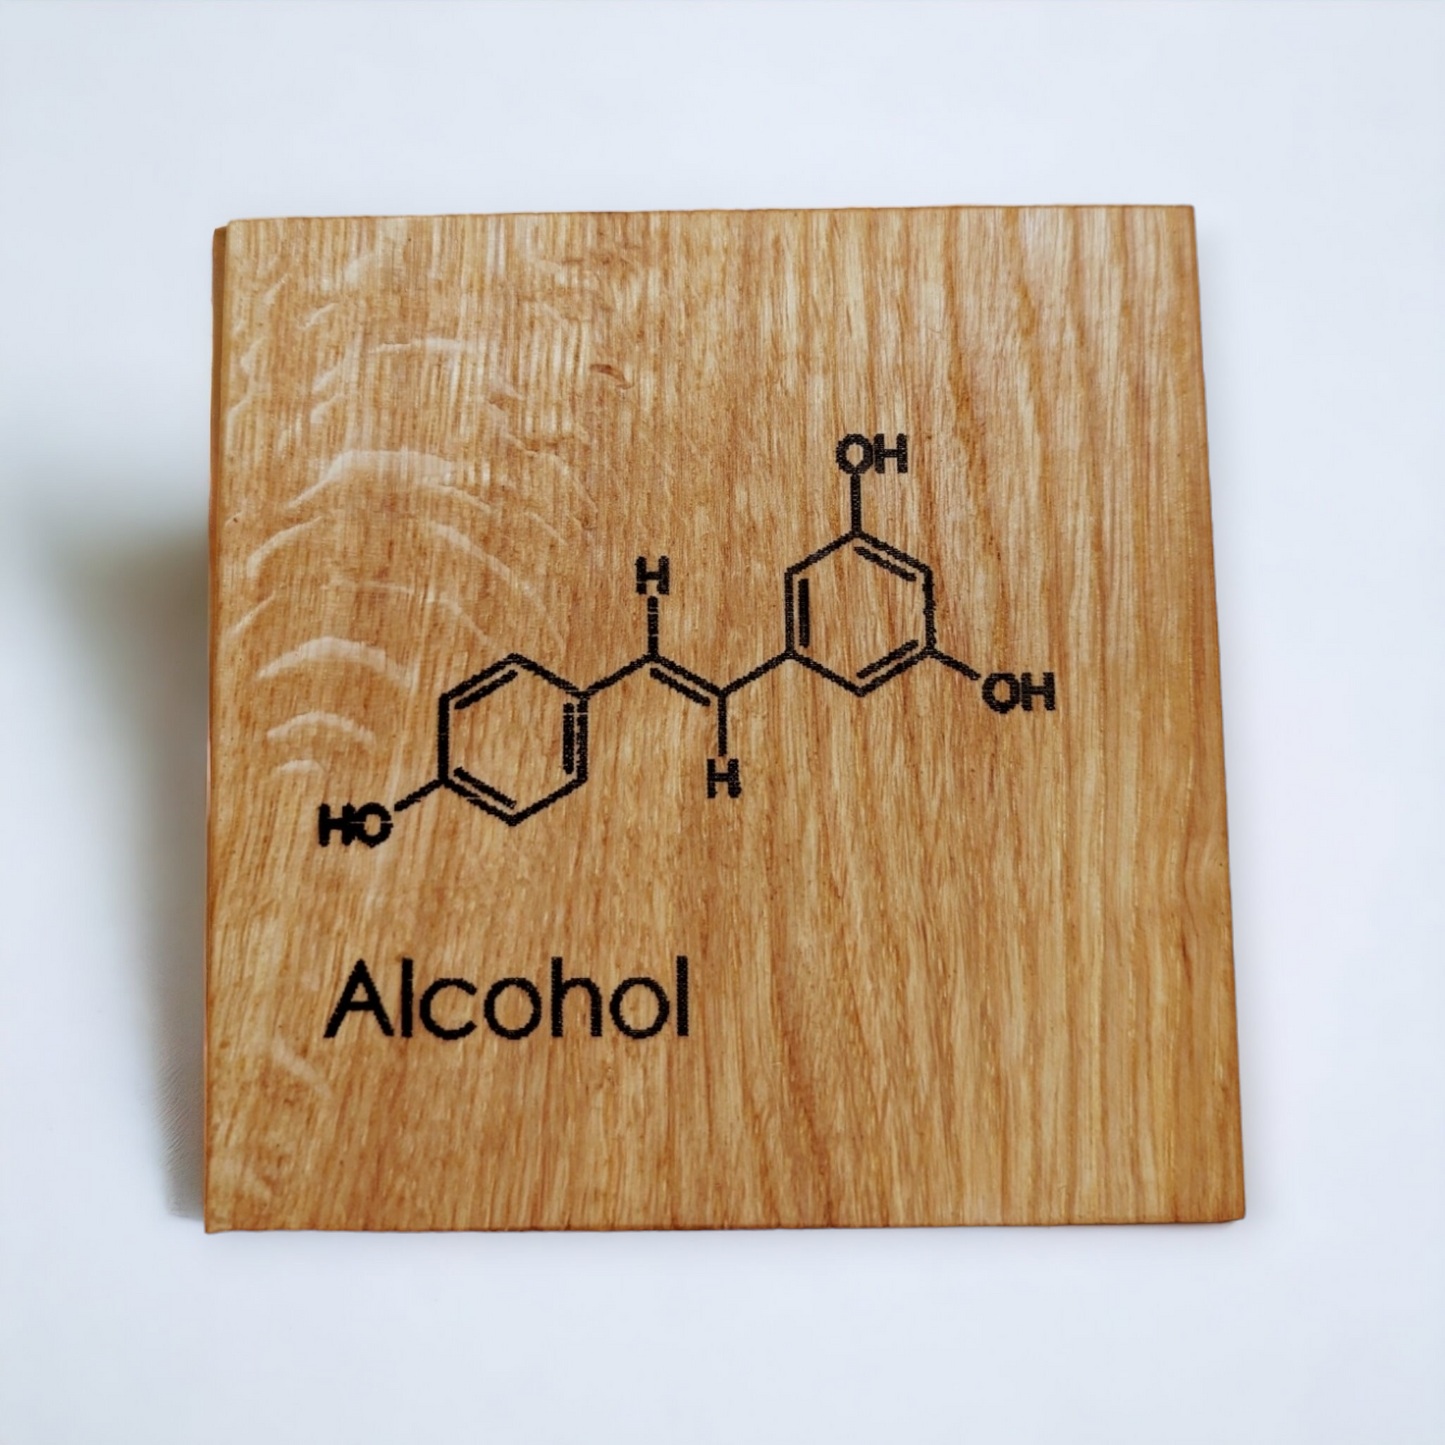 Scottish sustainable oak coaster set - molecules